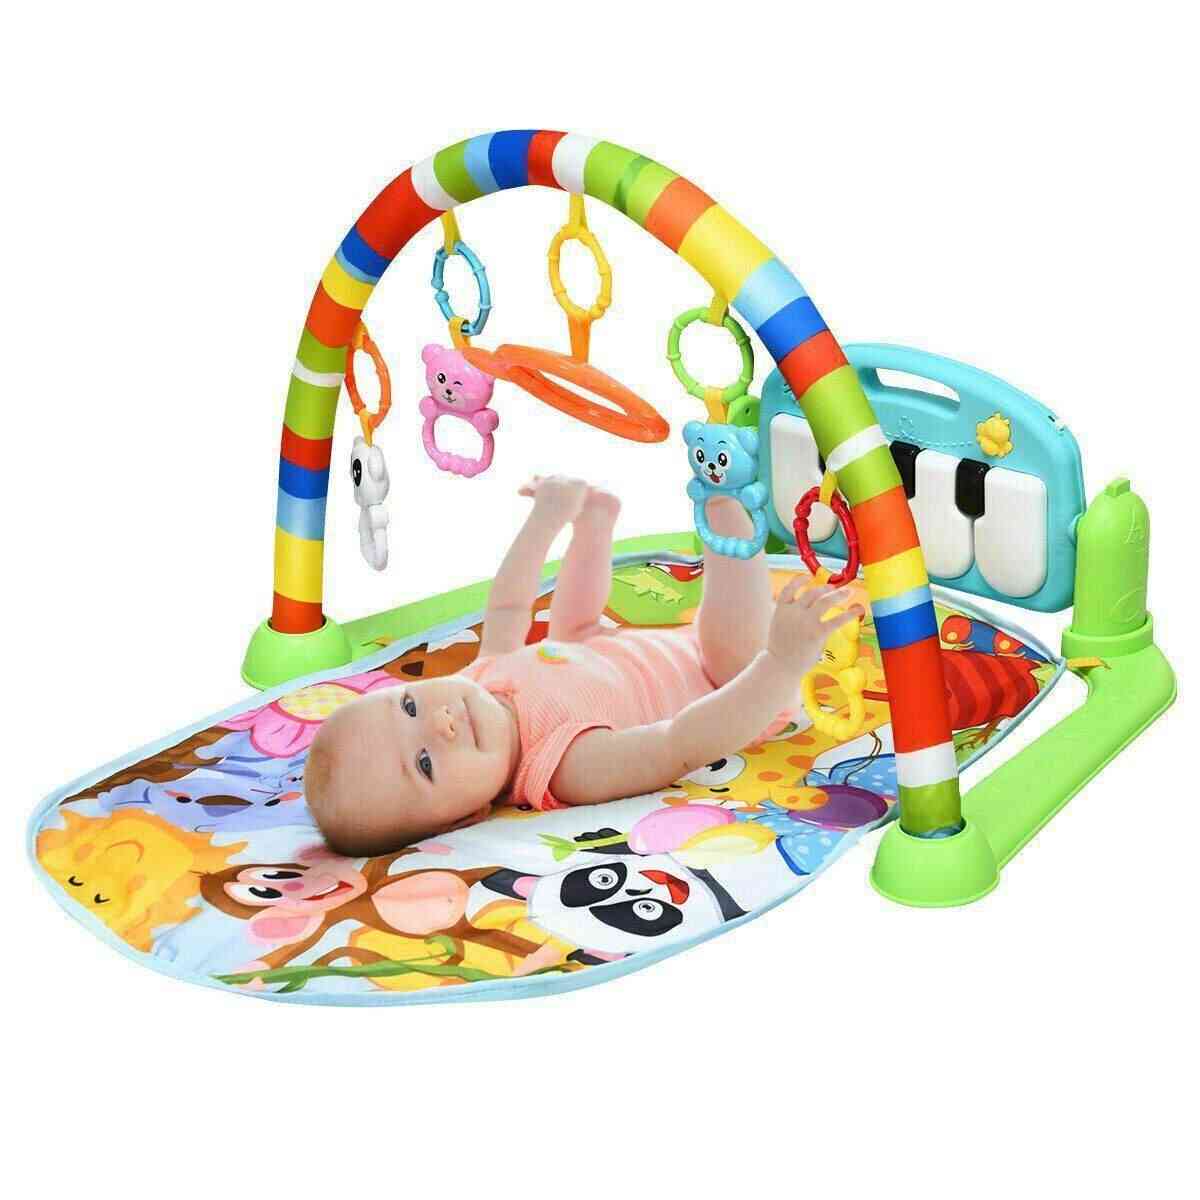 מחצלת משחקים לחדר כושר לתינוק 0-12 חודשים בפיתוח שטיח, רעשנים רכים צעצועים מוזיקליים למשחקי תינוקות - א